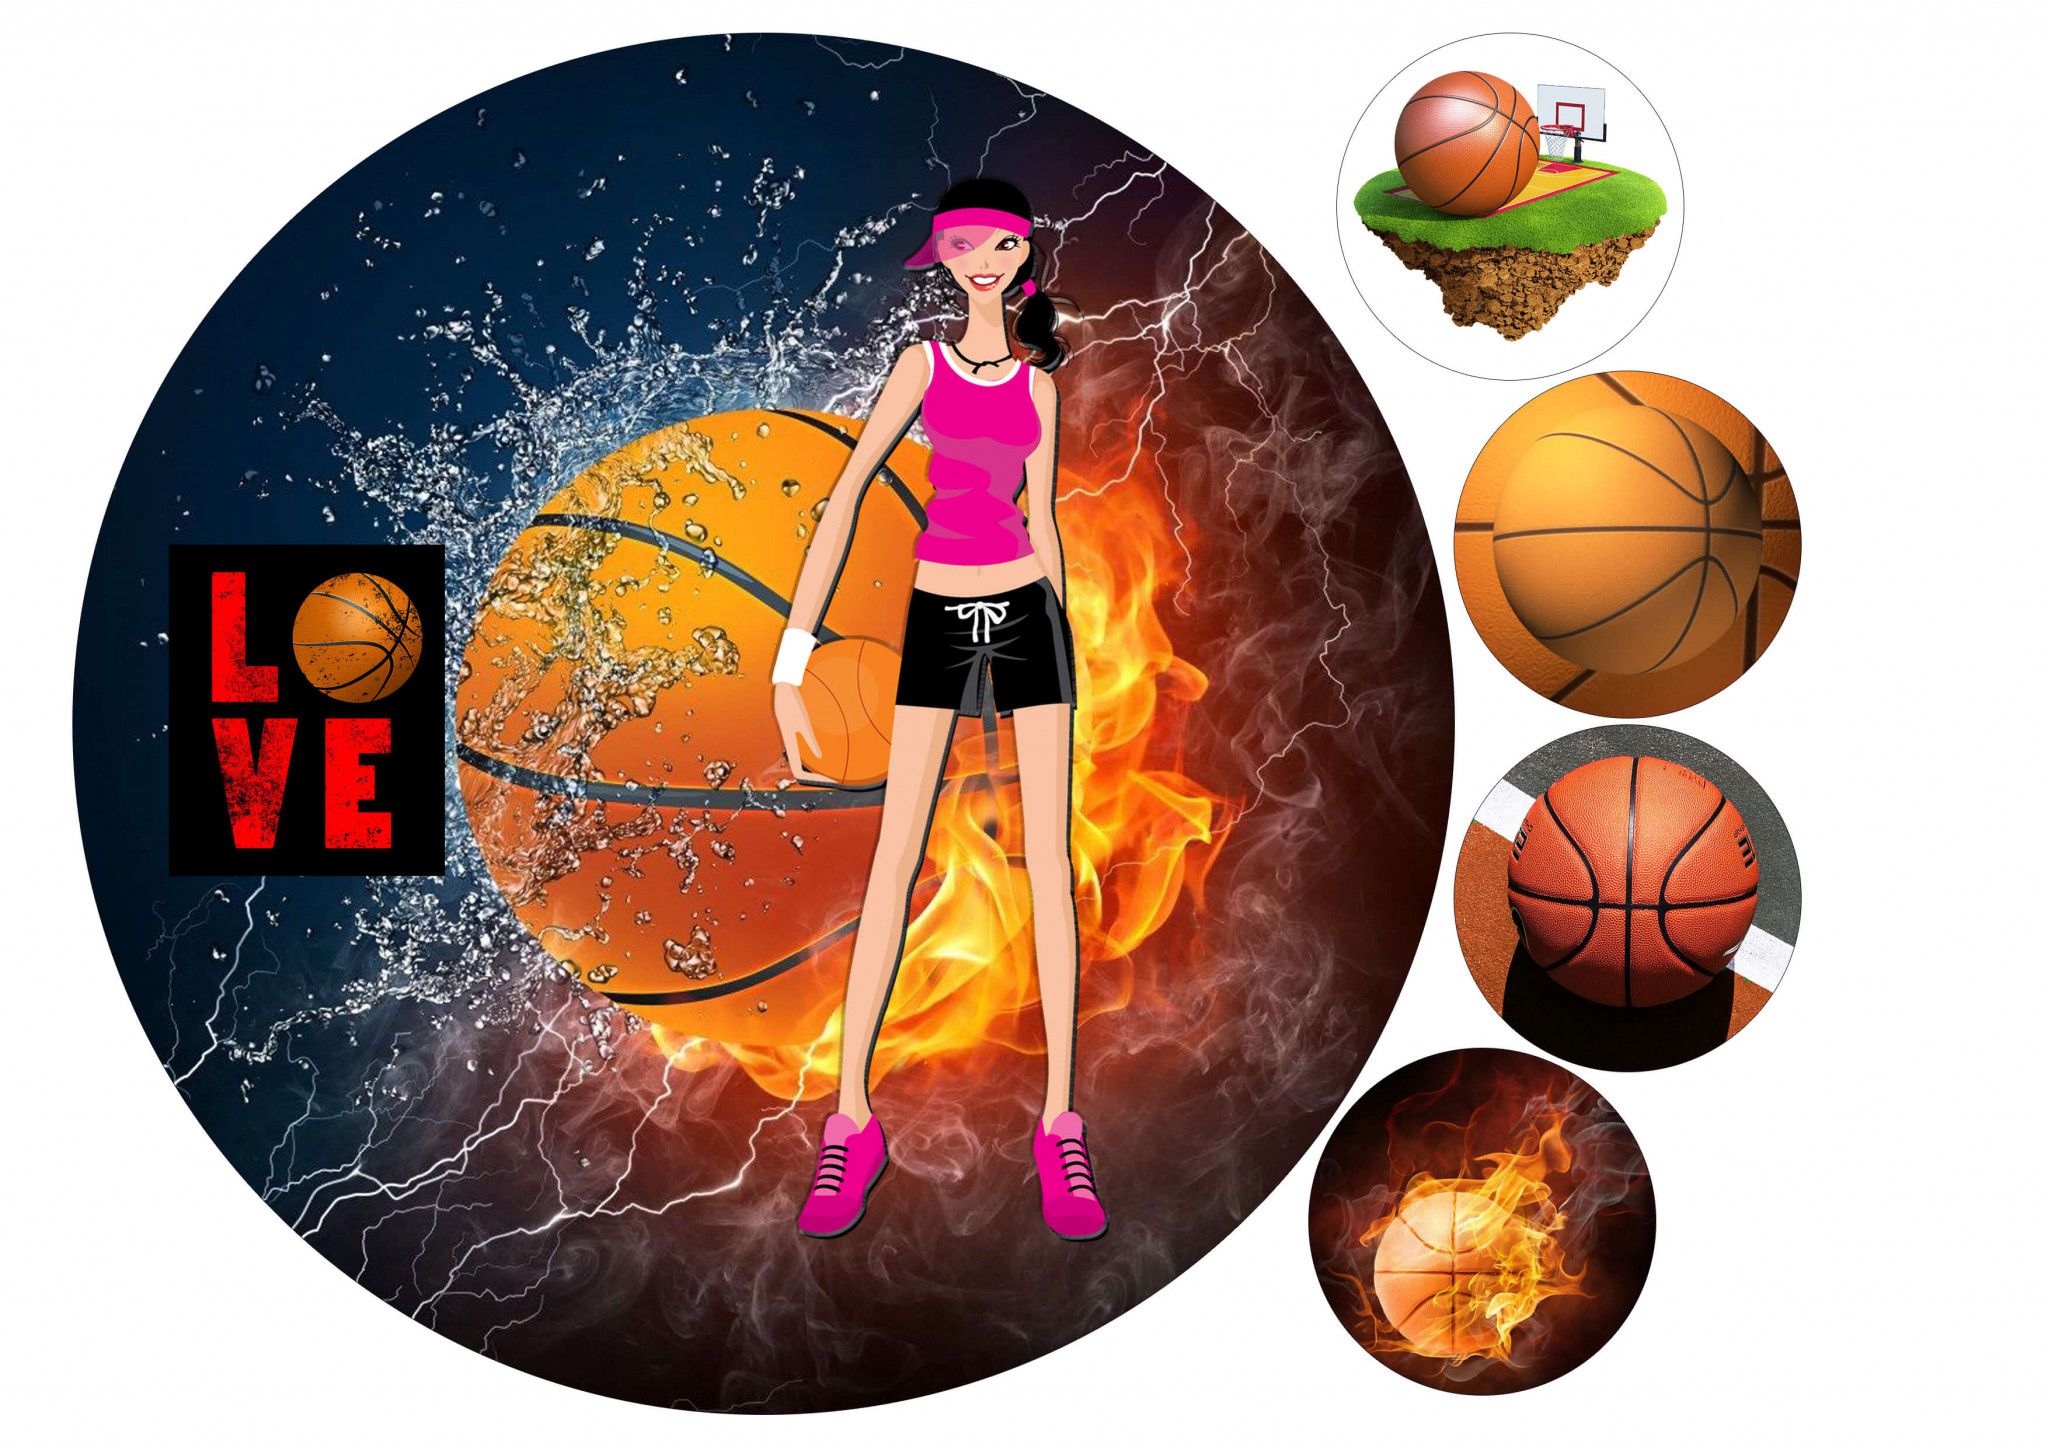 ⋗ Сахарная картинка Баскетбол купить в Украине ➛ CakeShop.com.ua, фото